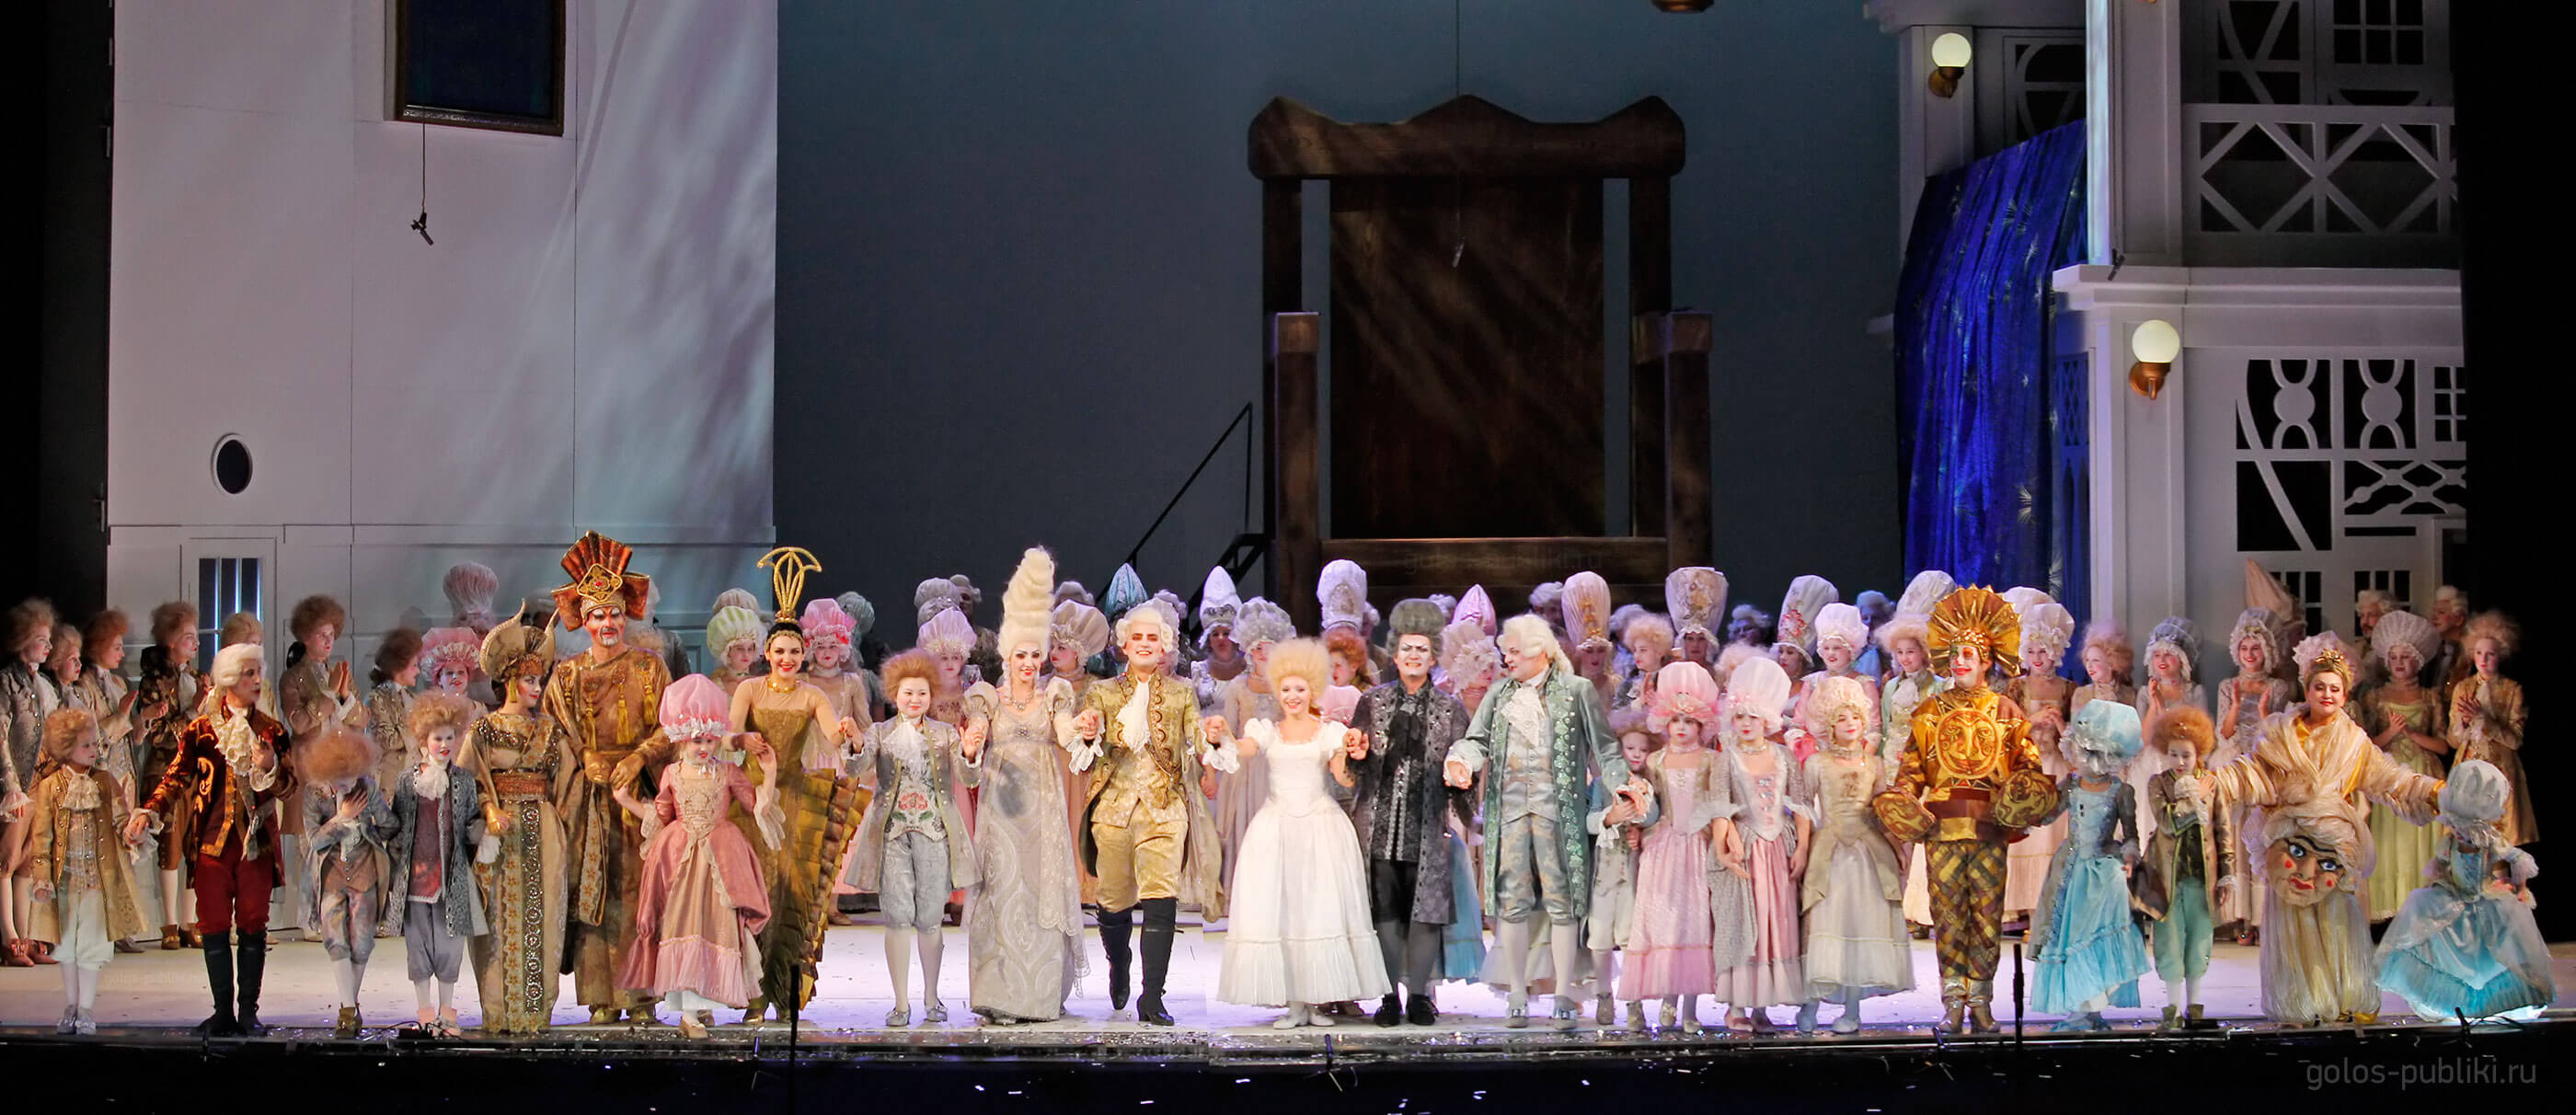 «Щелкунчик. Опера» – премьера в Новой Опере, 27 декабря 2014